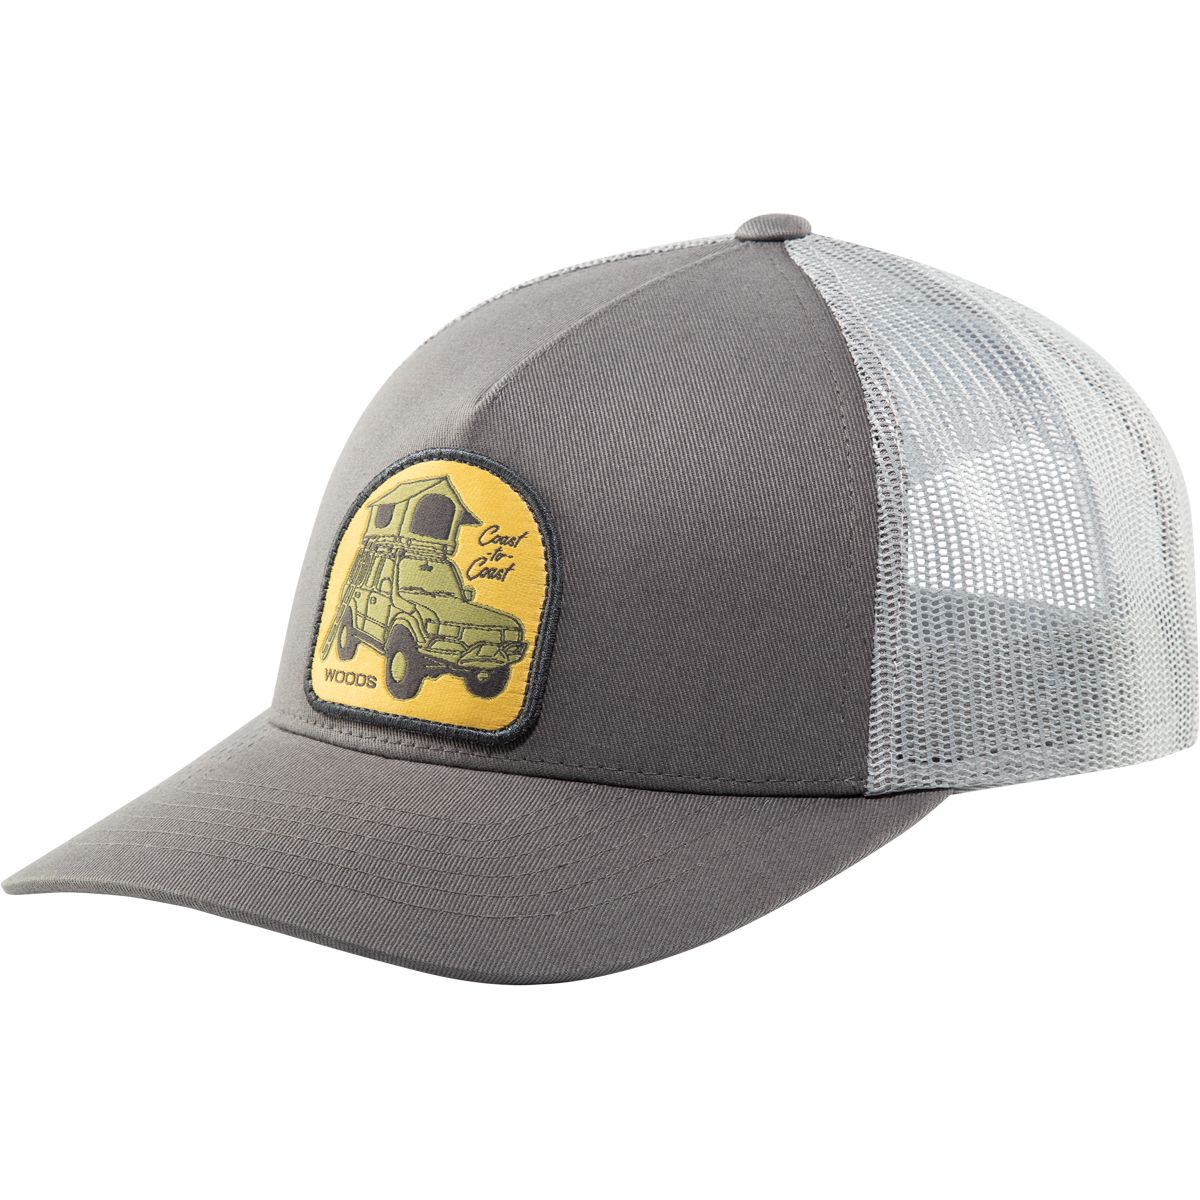 Woods Men's Heritage Skycamper Trucker Hat